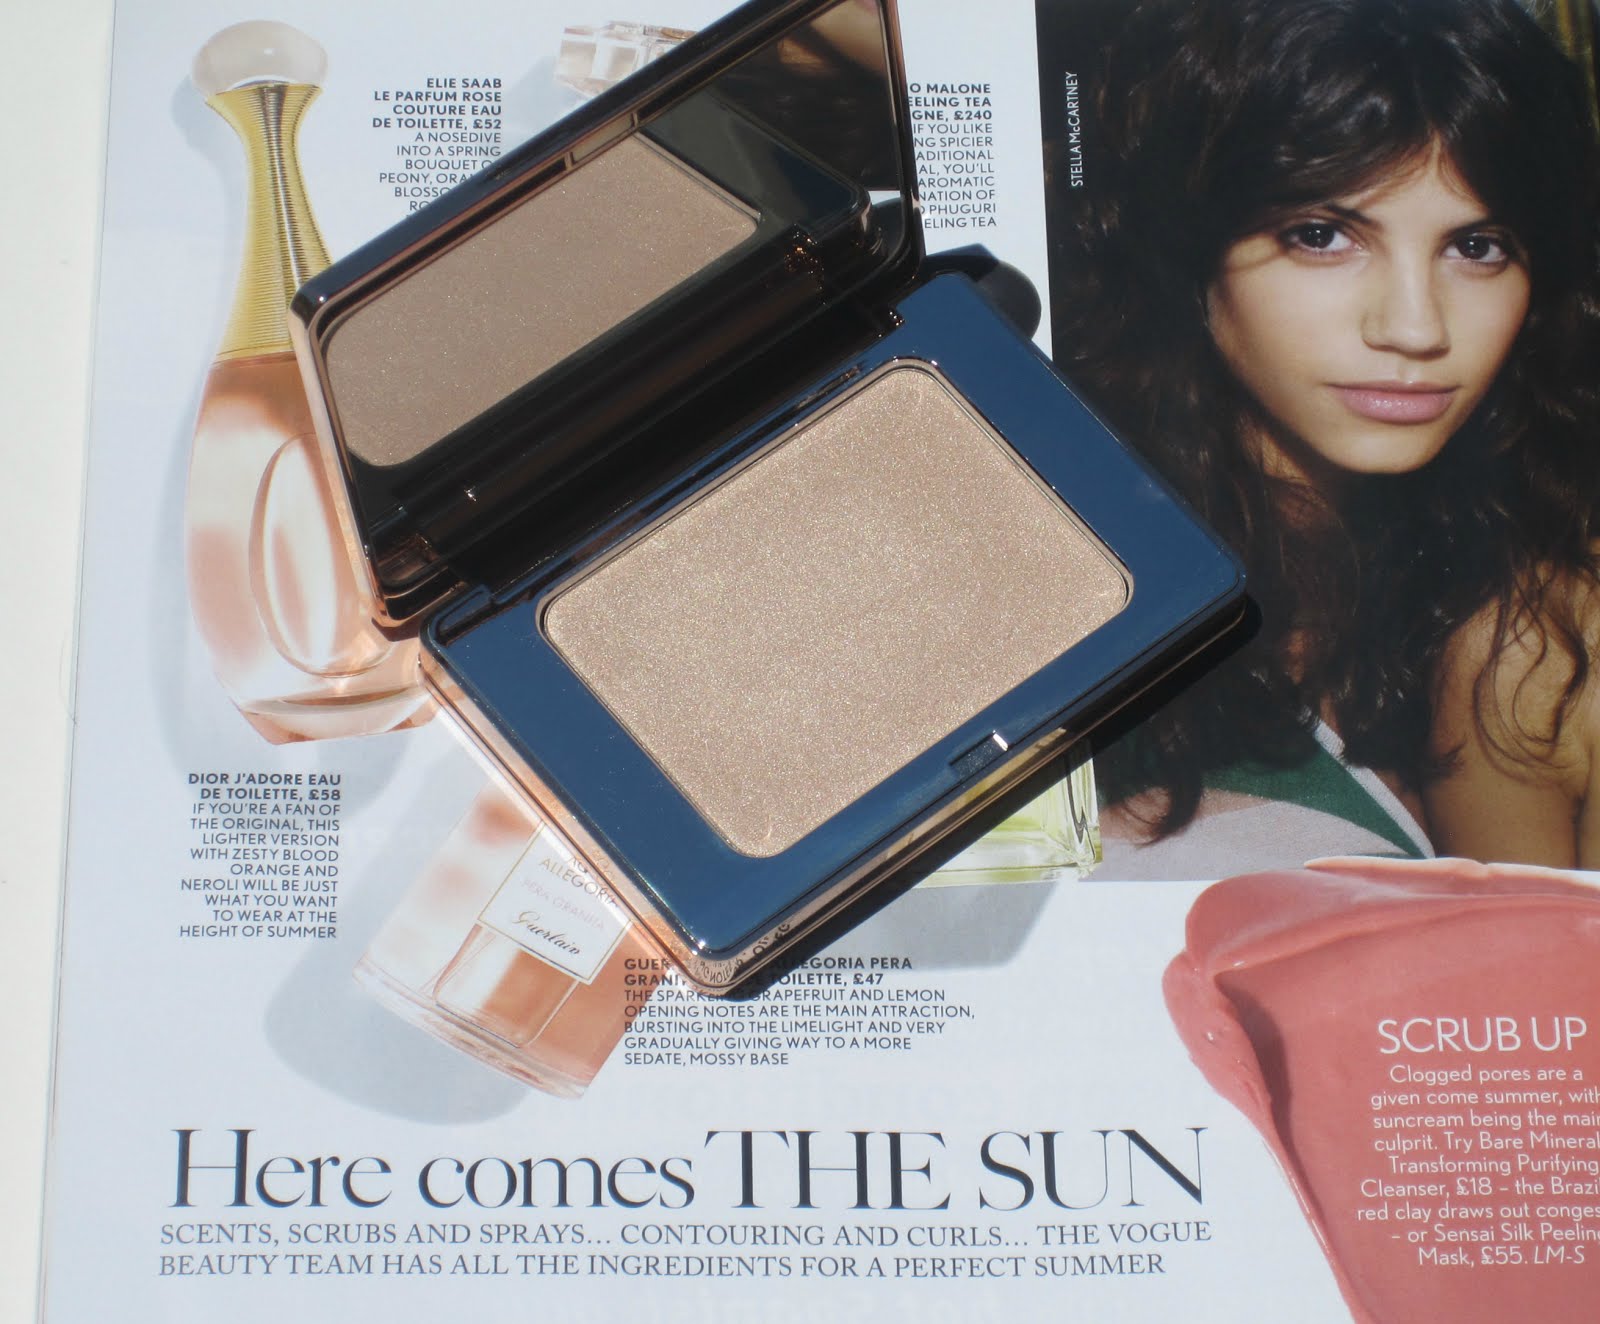 Natasha Denona All Over Glow Face & Body Shimmer in Powder - 01 Light –  Beautykom